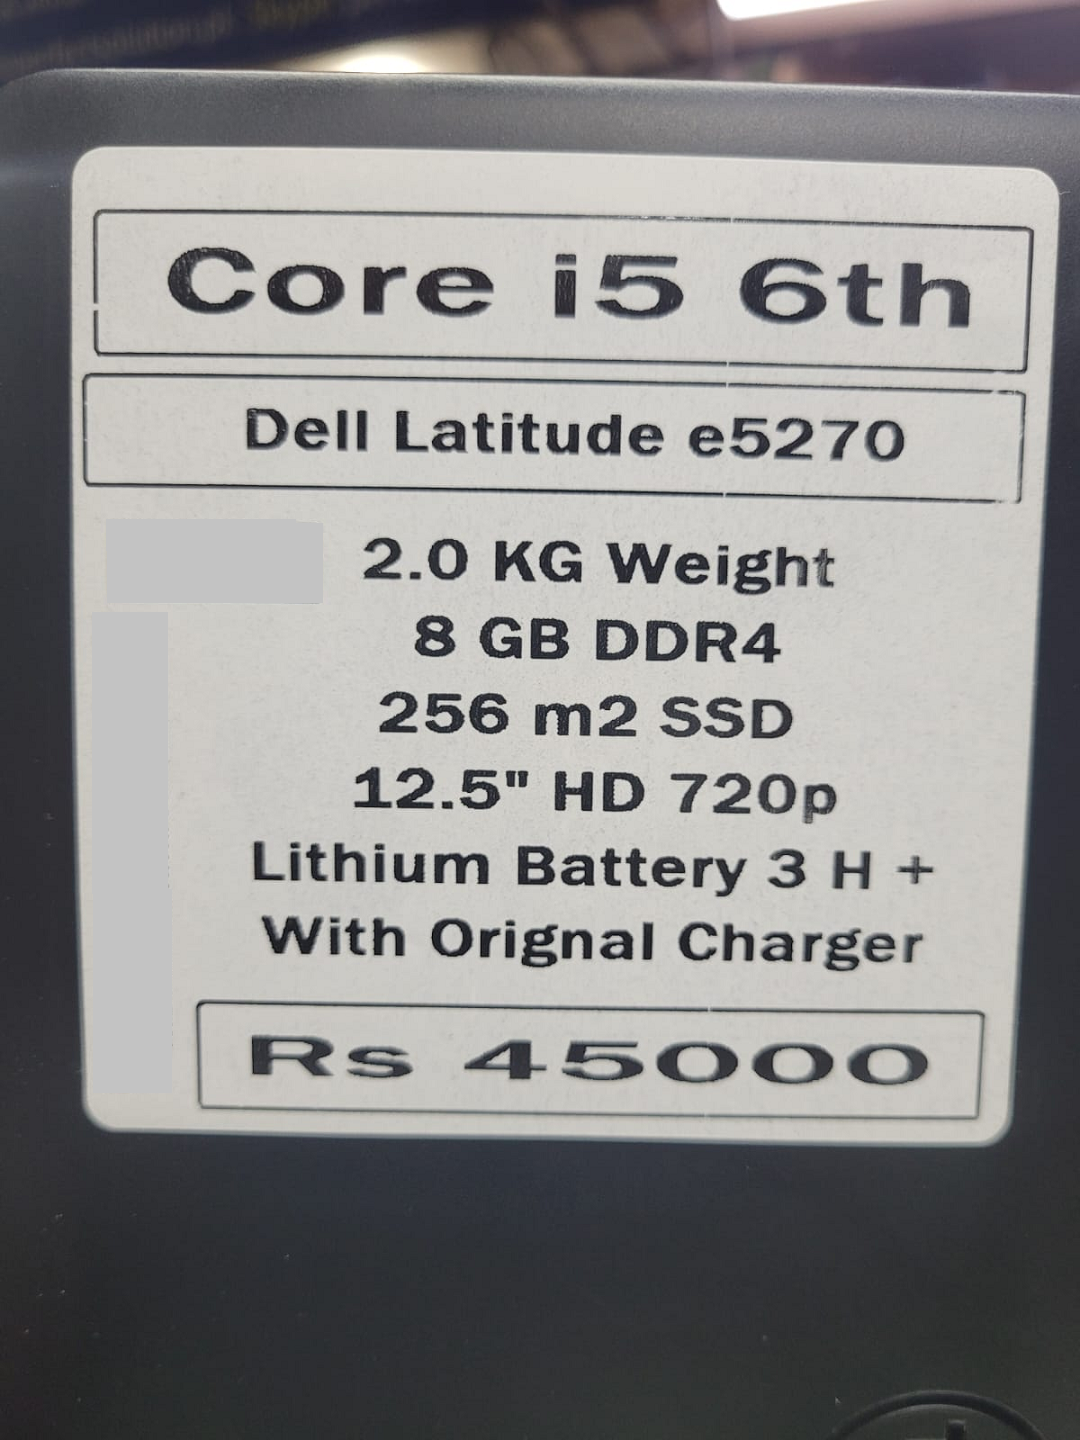 Dell latitude E5270 price in pakistan